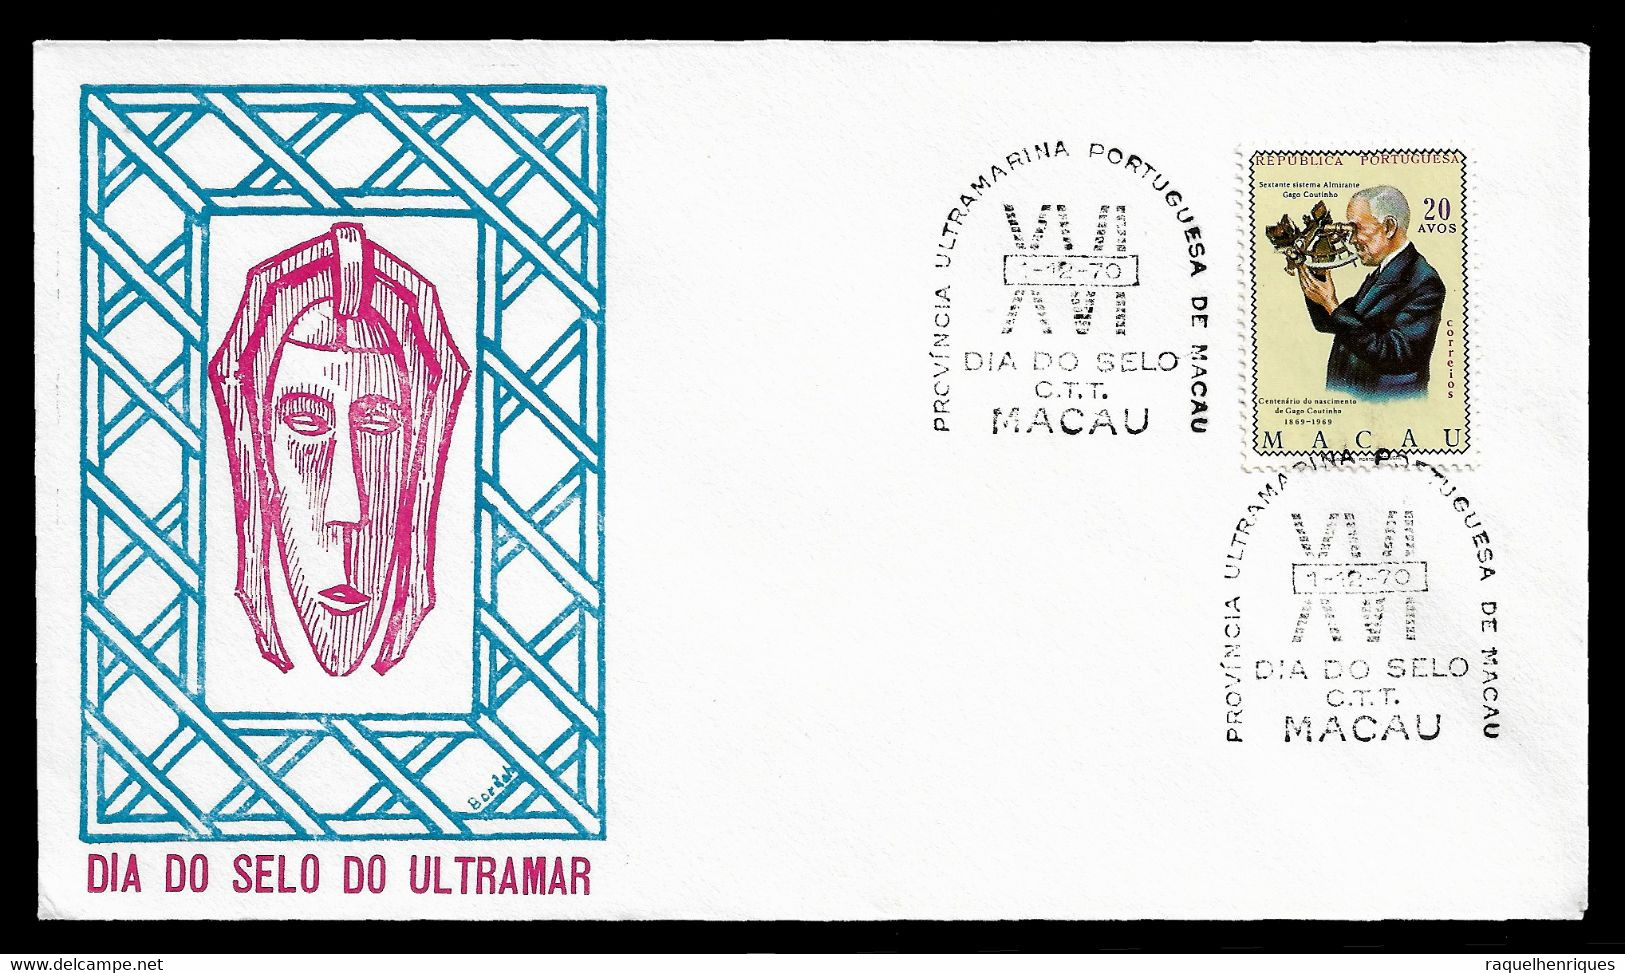 MACAU COVER - 1970 STAMP DAY - MACAU - DIA DO SELO (STB10-556) - Briefe U. Dokumente